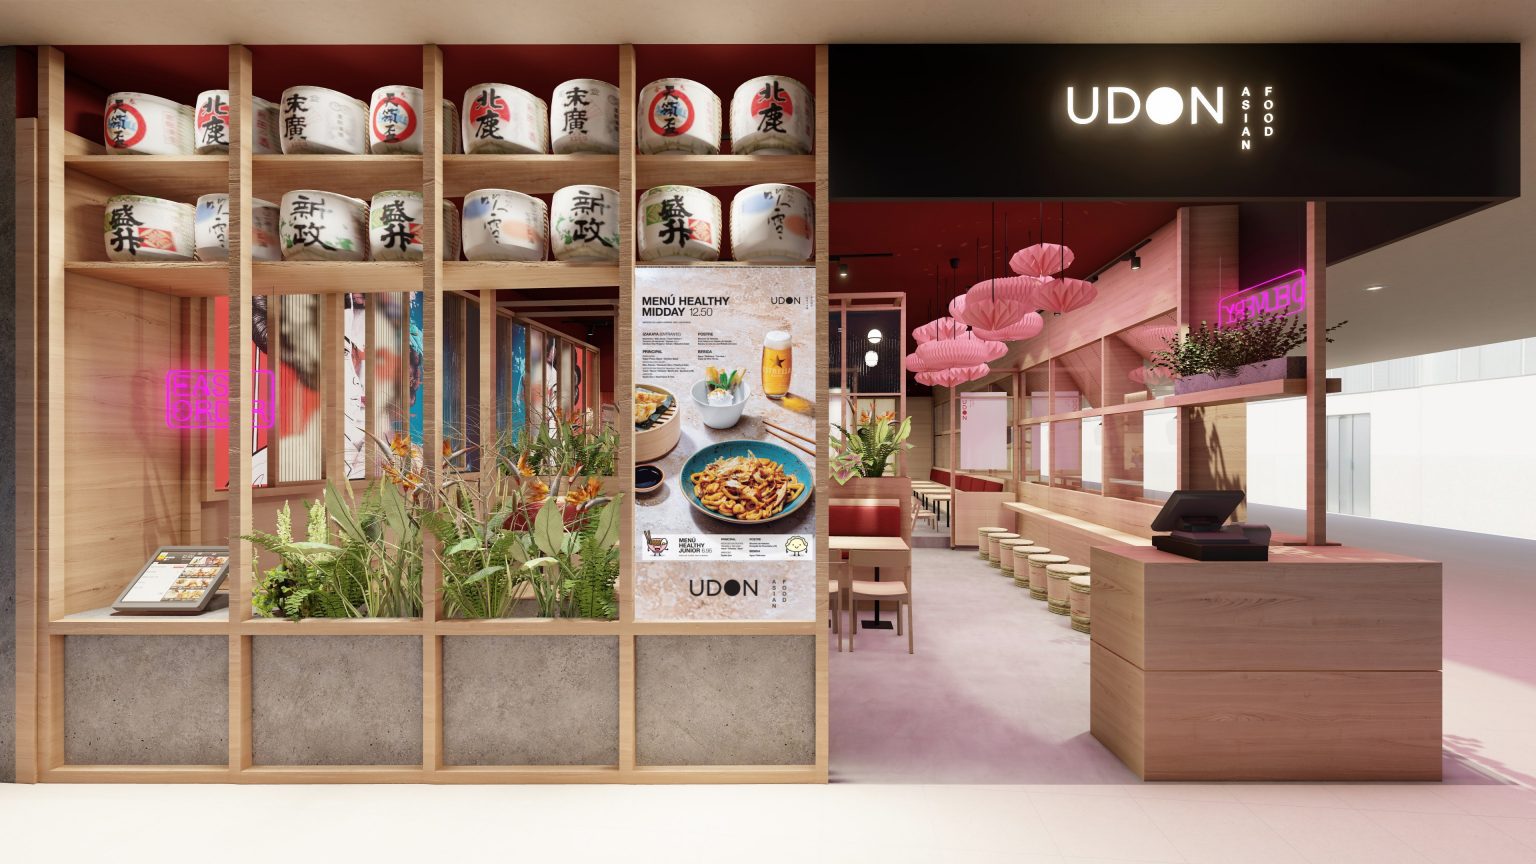 Udon Asian Food formará parte del panel de expertos convocados por la EFSS